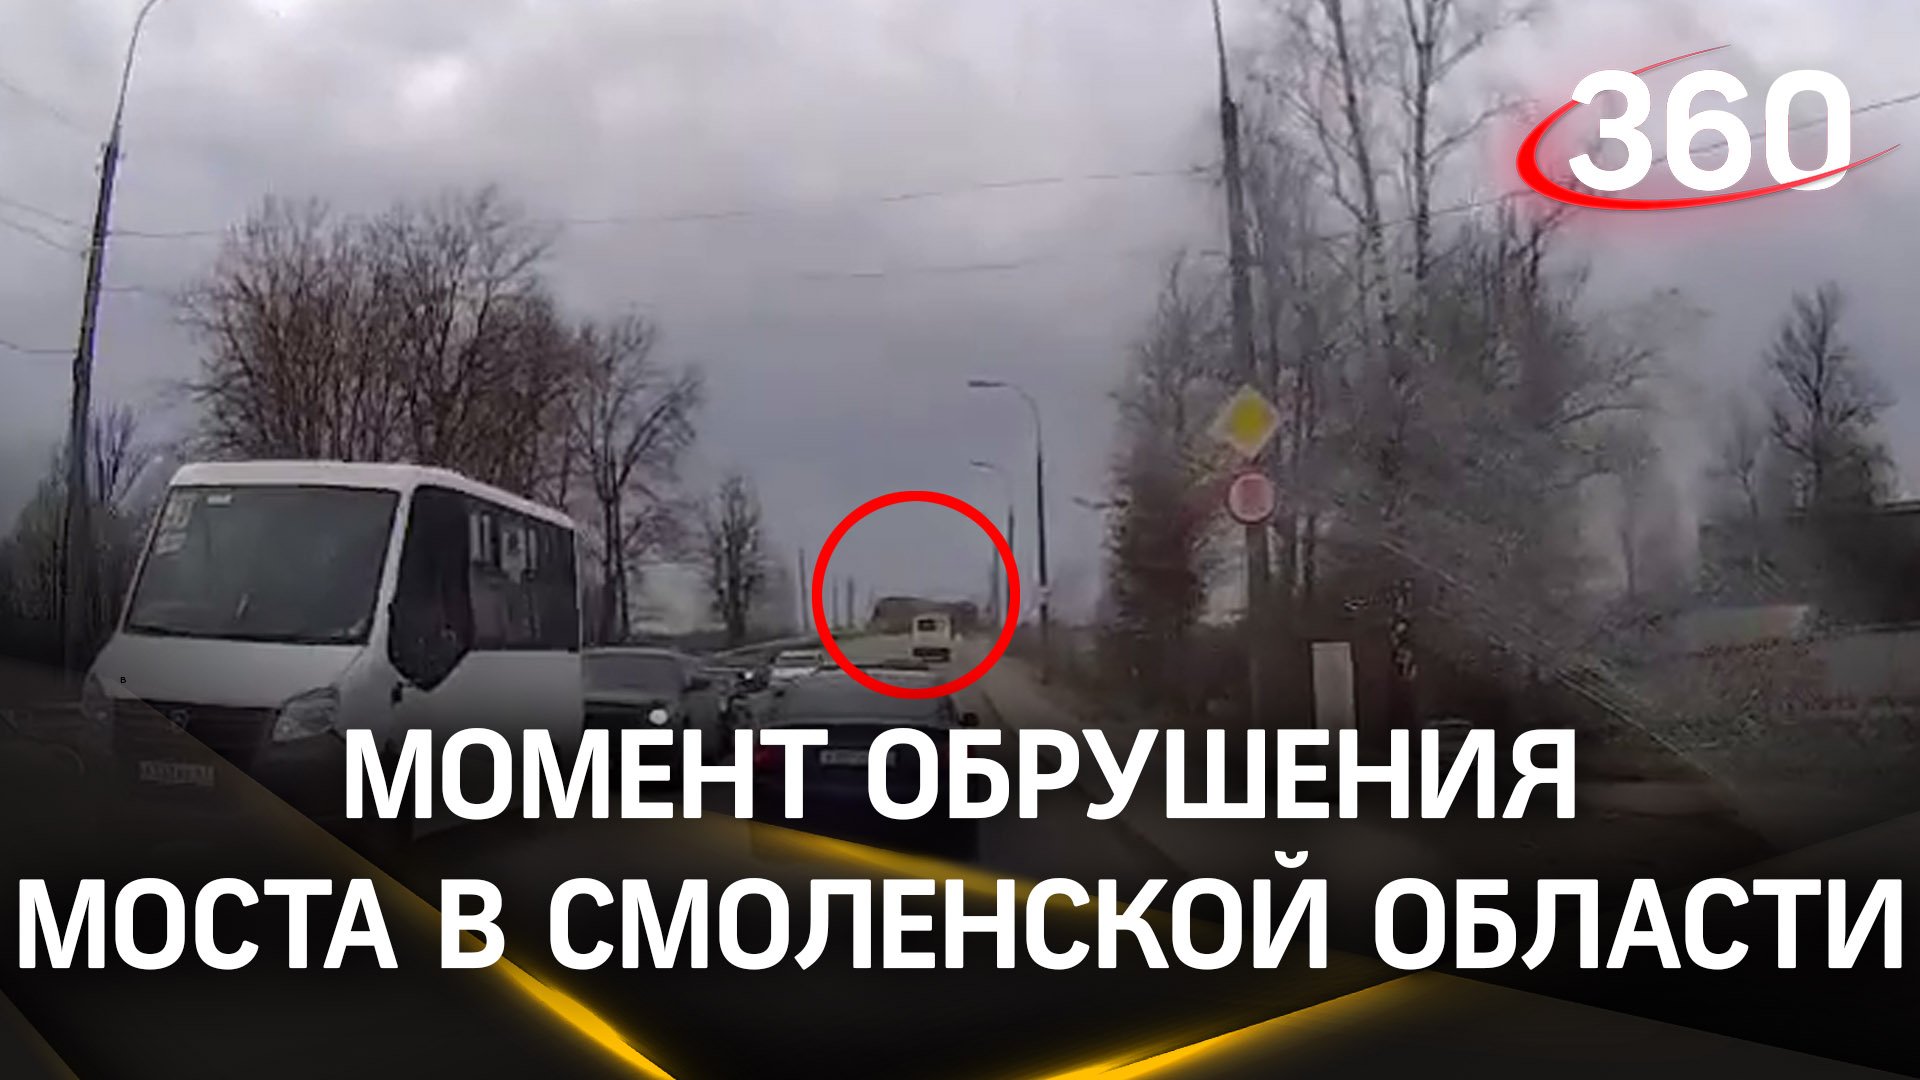 Момент обрушения моста в Вязьме Смоленской области